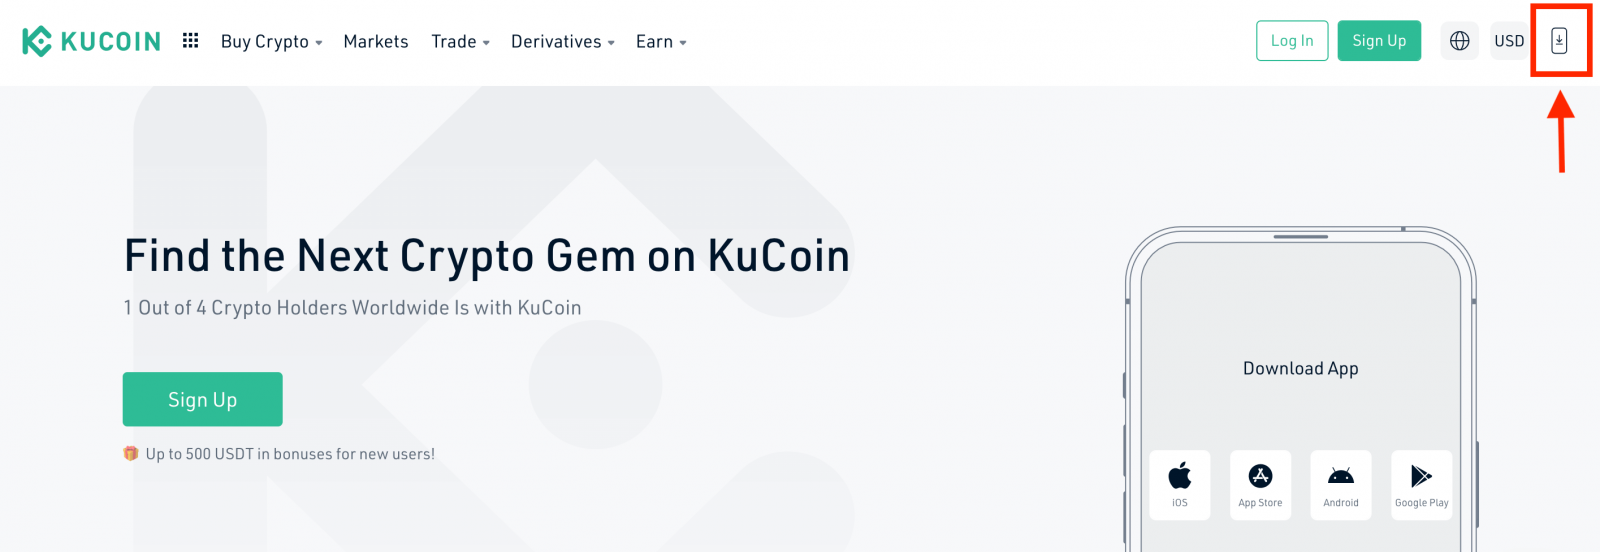 如何开户并登录 KuCoin